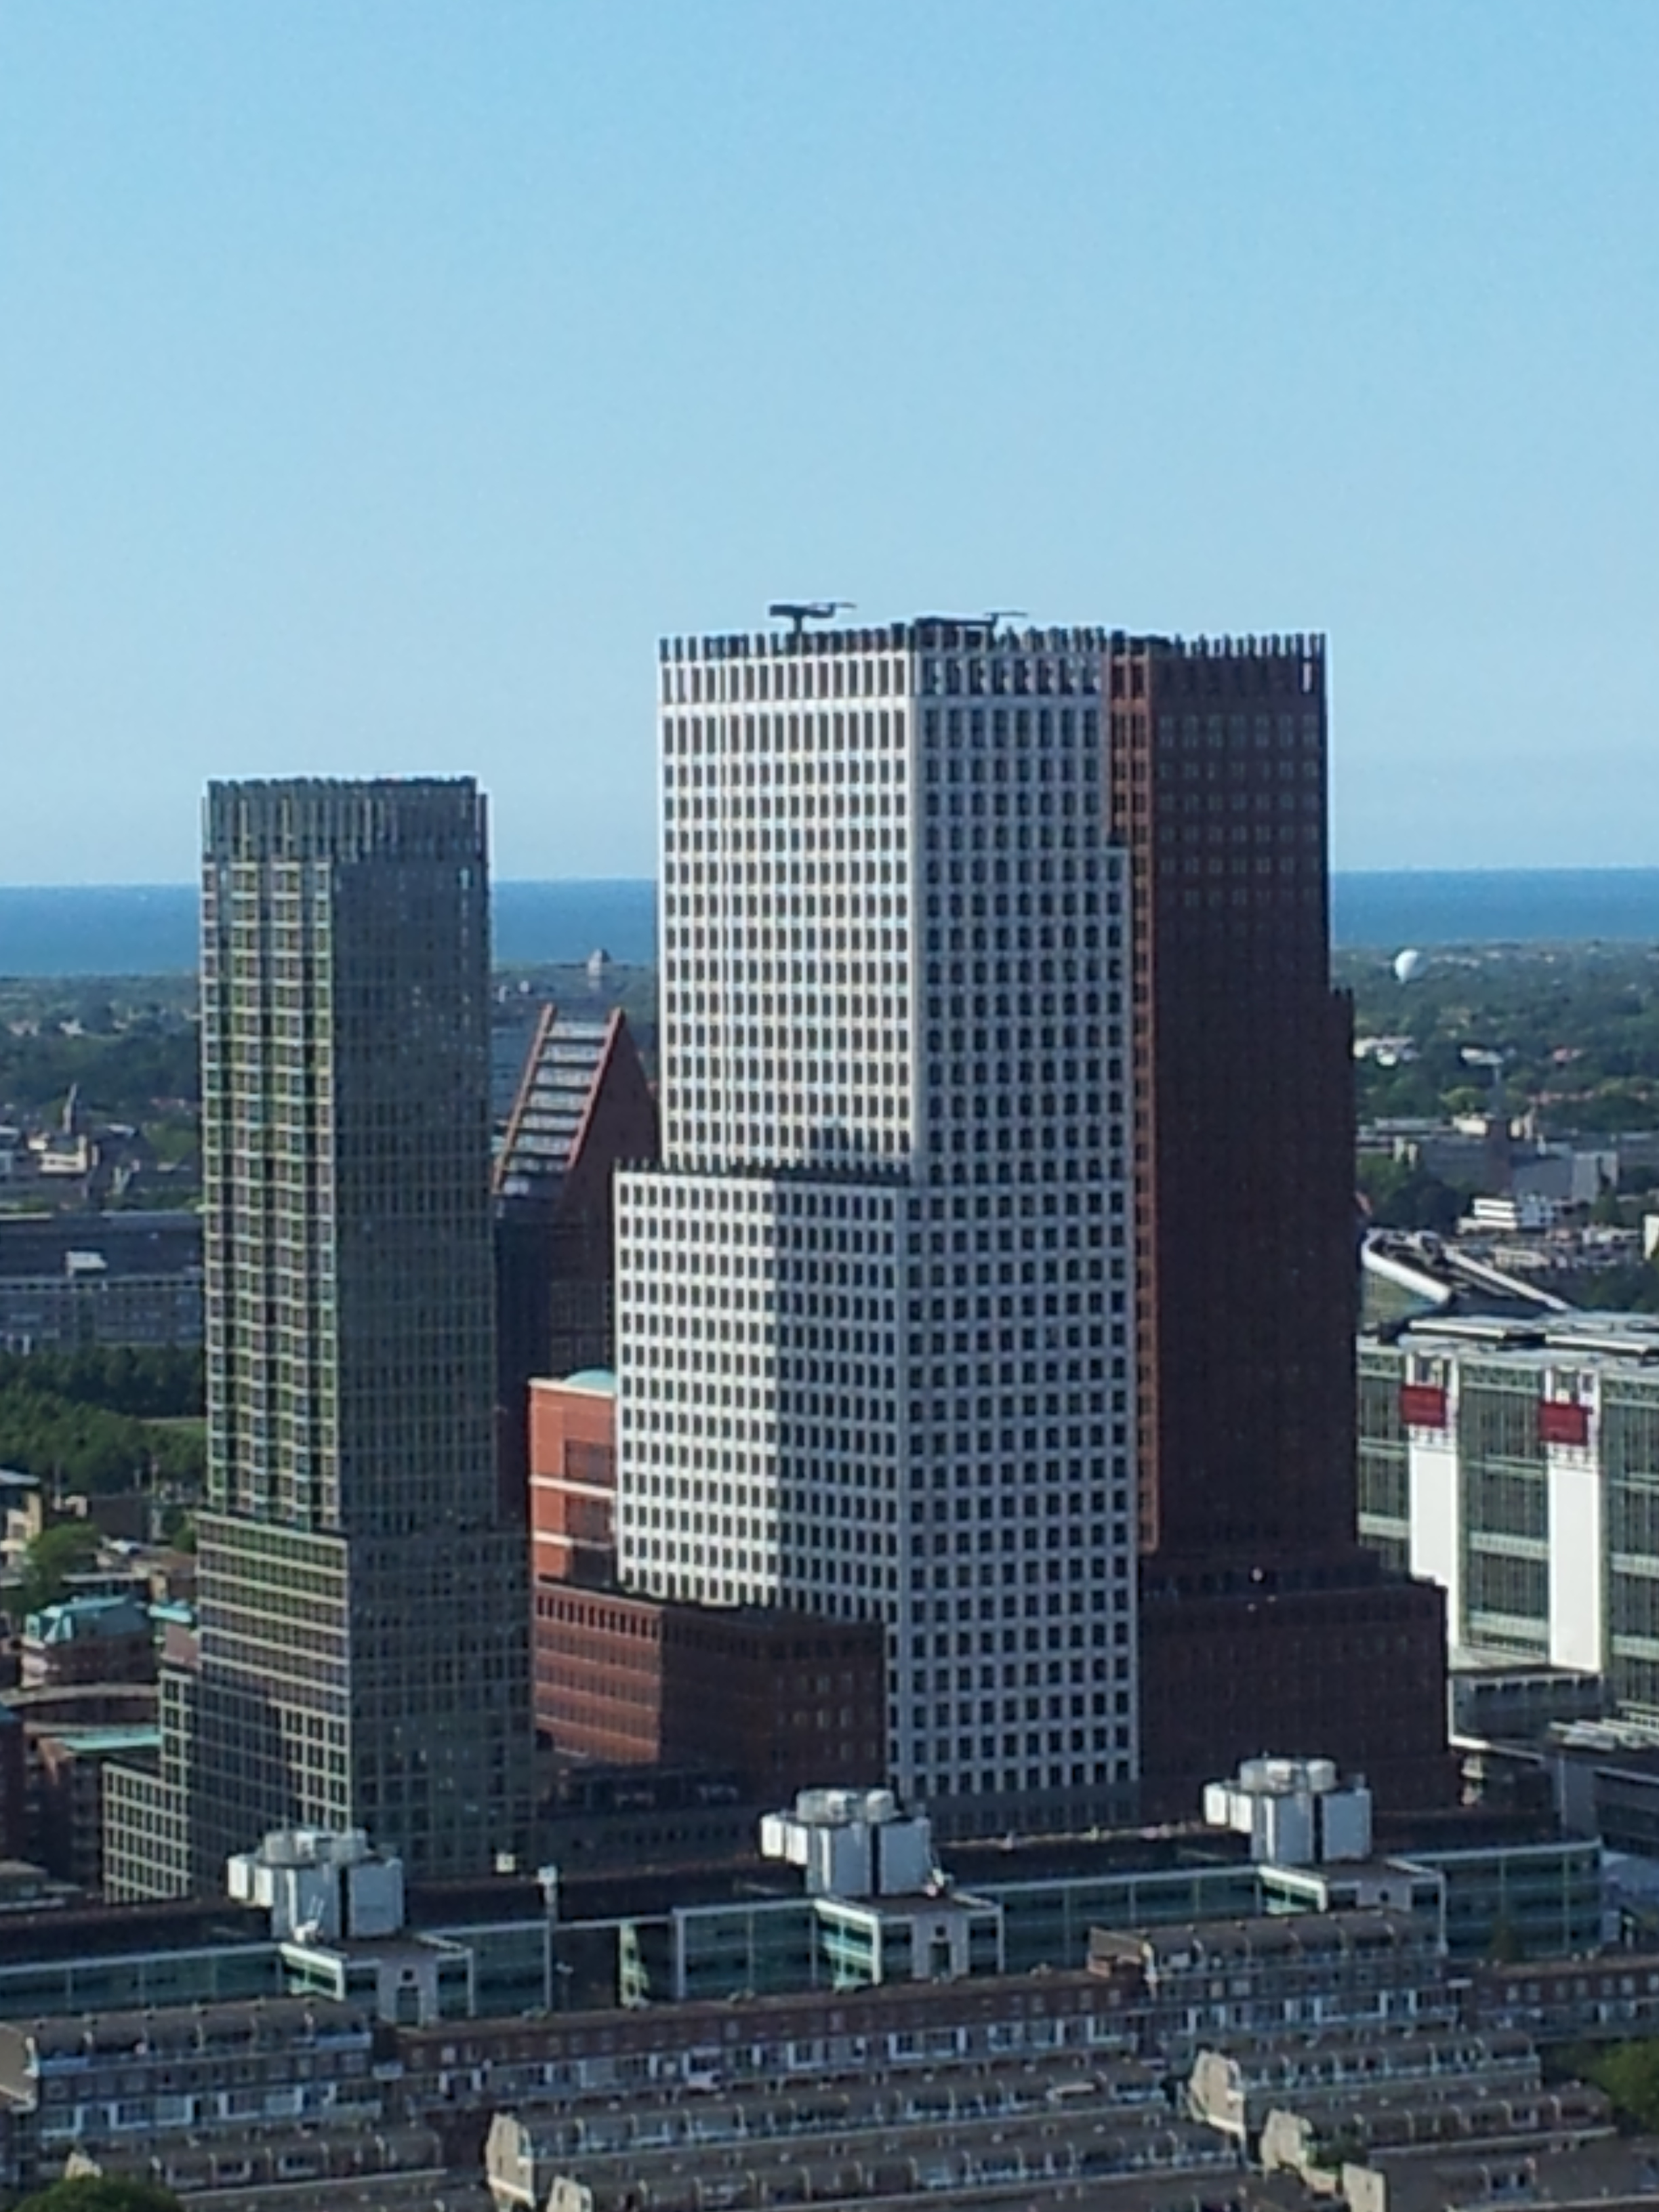 Verhuisproject naar grootste kantoorgebouw van Nederland voor Mondial Movers